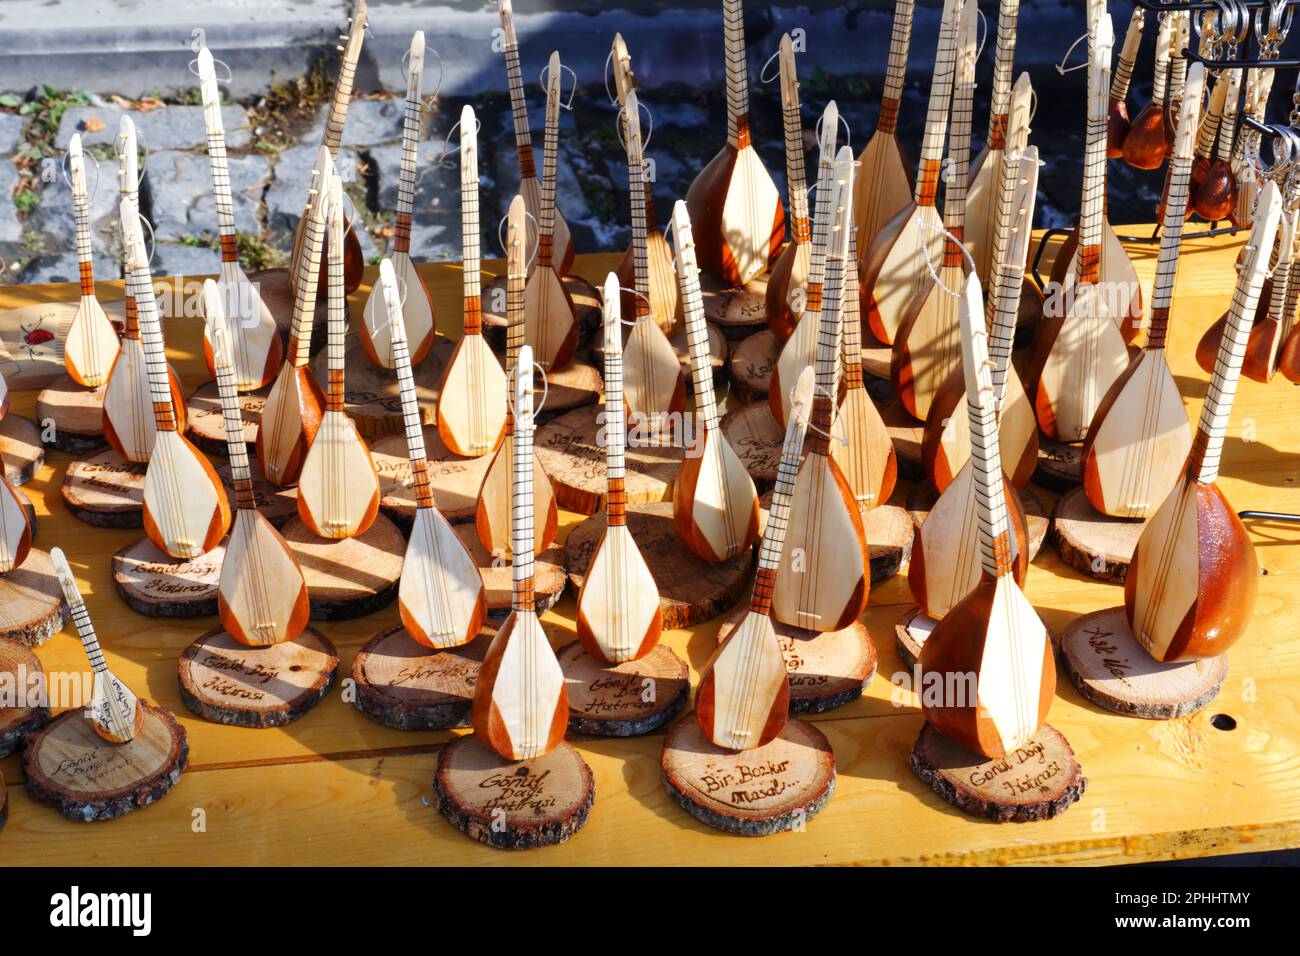 Miniatur-Baglama und saz werden an einem sonnigen Tag im Freien als Souvenir verkauft. Baglama ist ein typisches türkisches Musikinstrument, das oft in der türkischen Kultur gespielt wird. Stockfoto